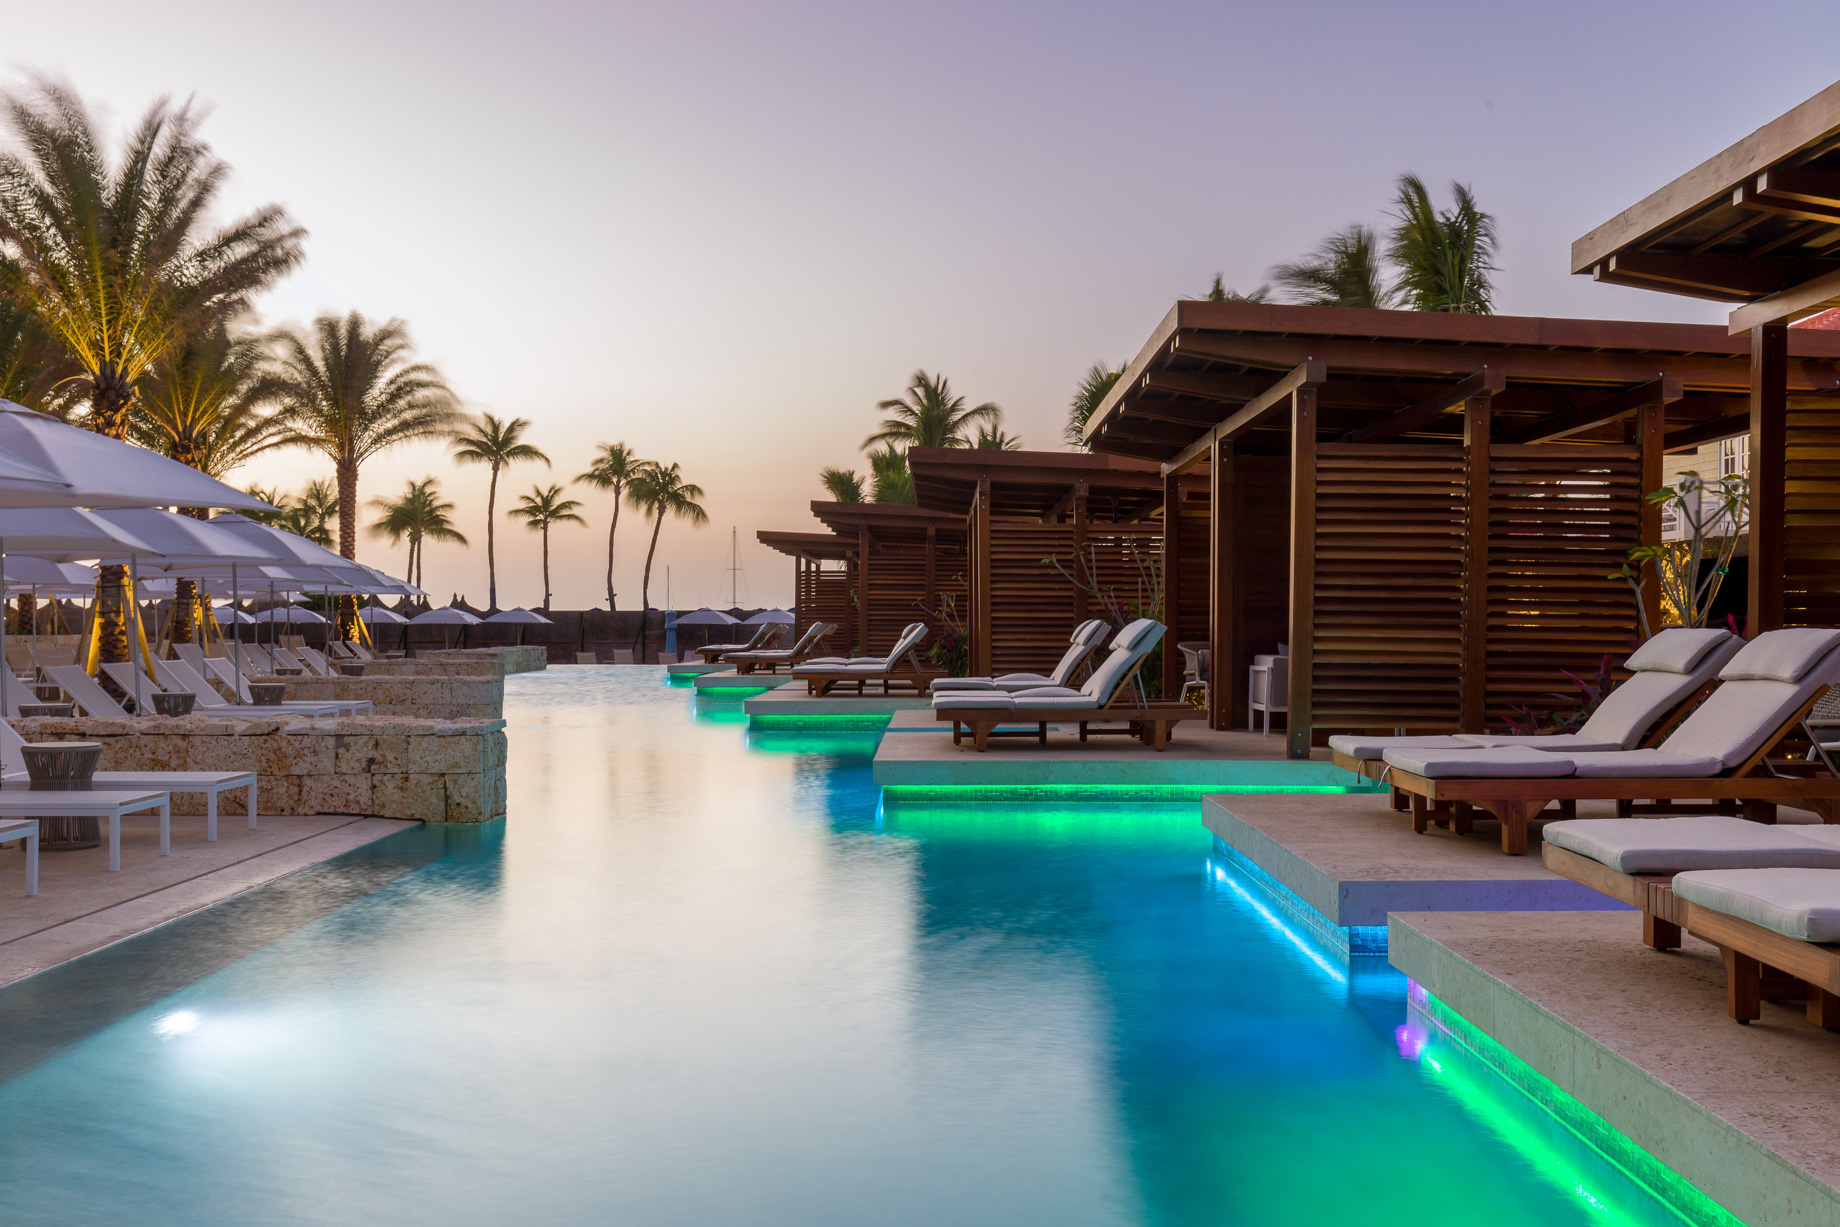 Hyatt Regency Aruba Resort & Casino – Noord, Aruba – Pool Deck Sunset